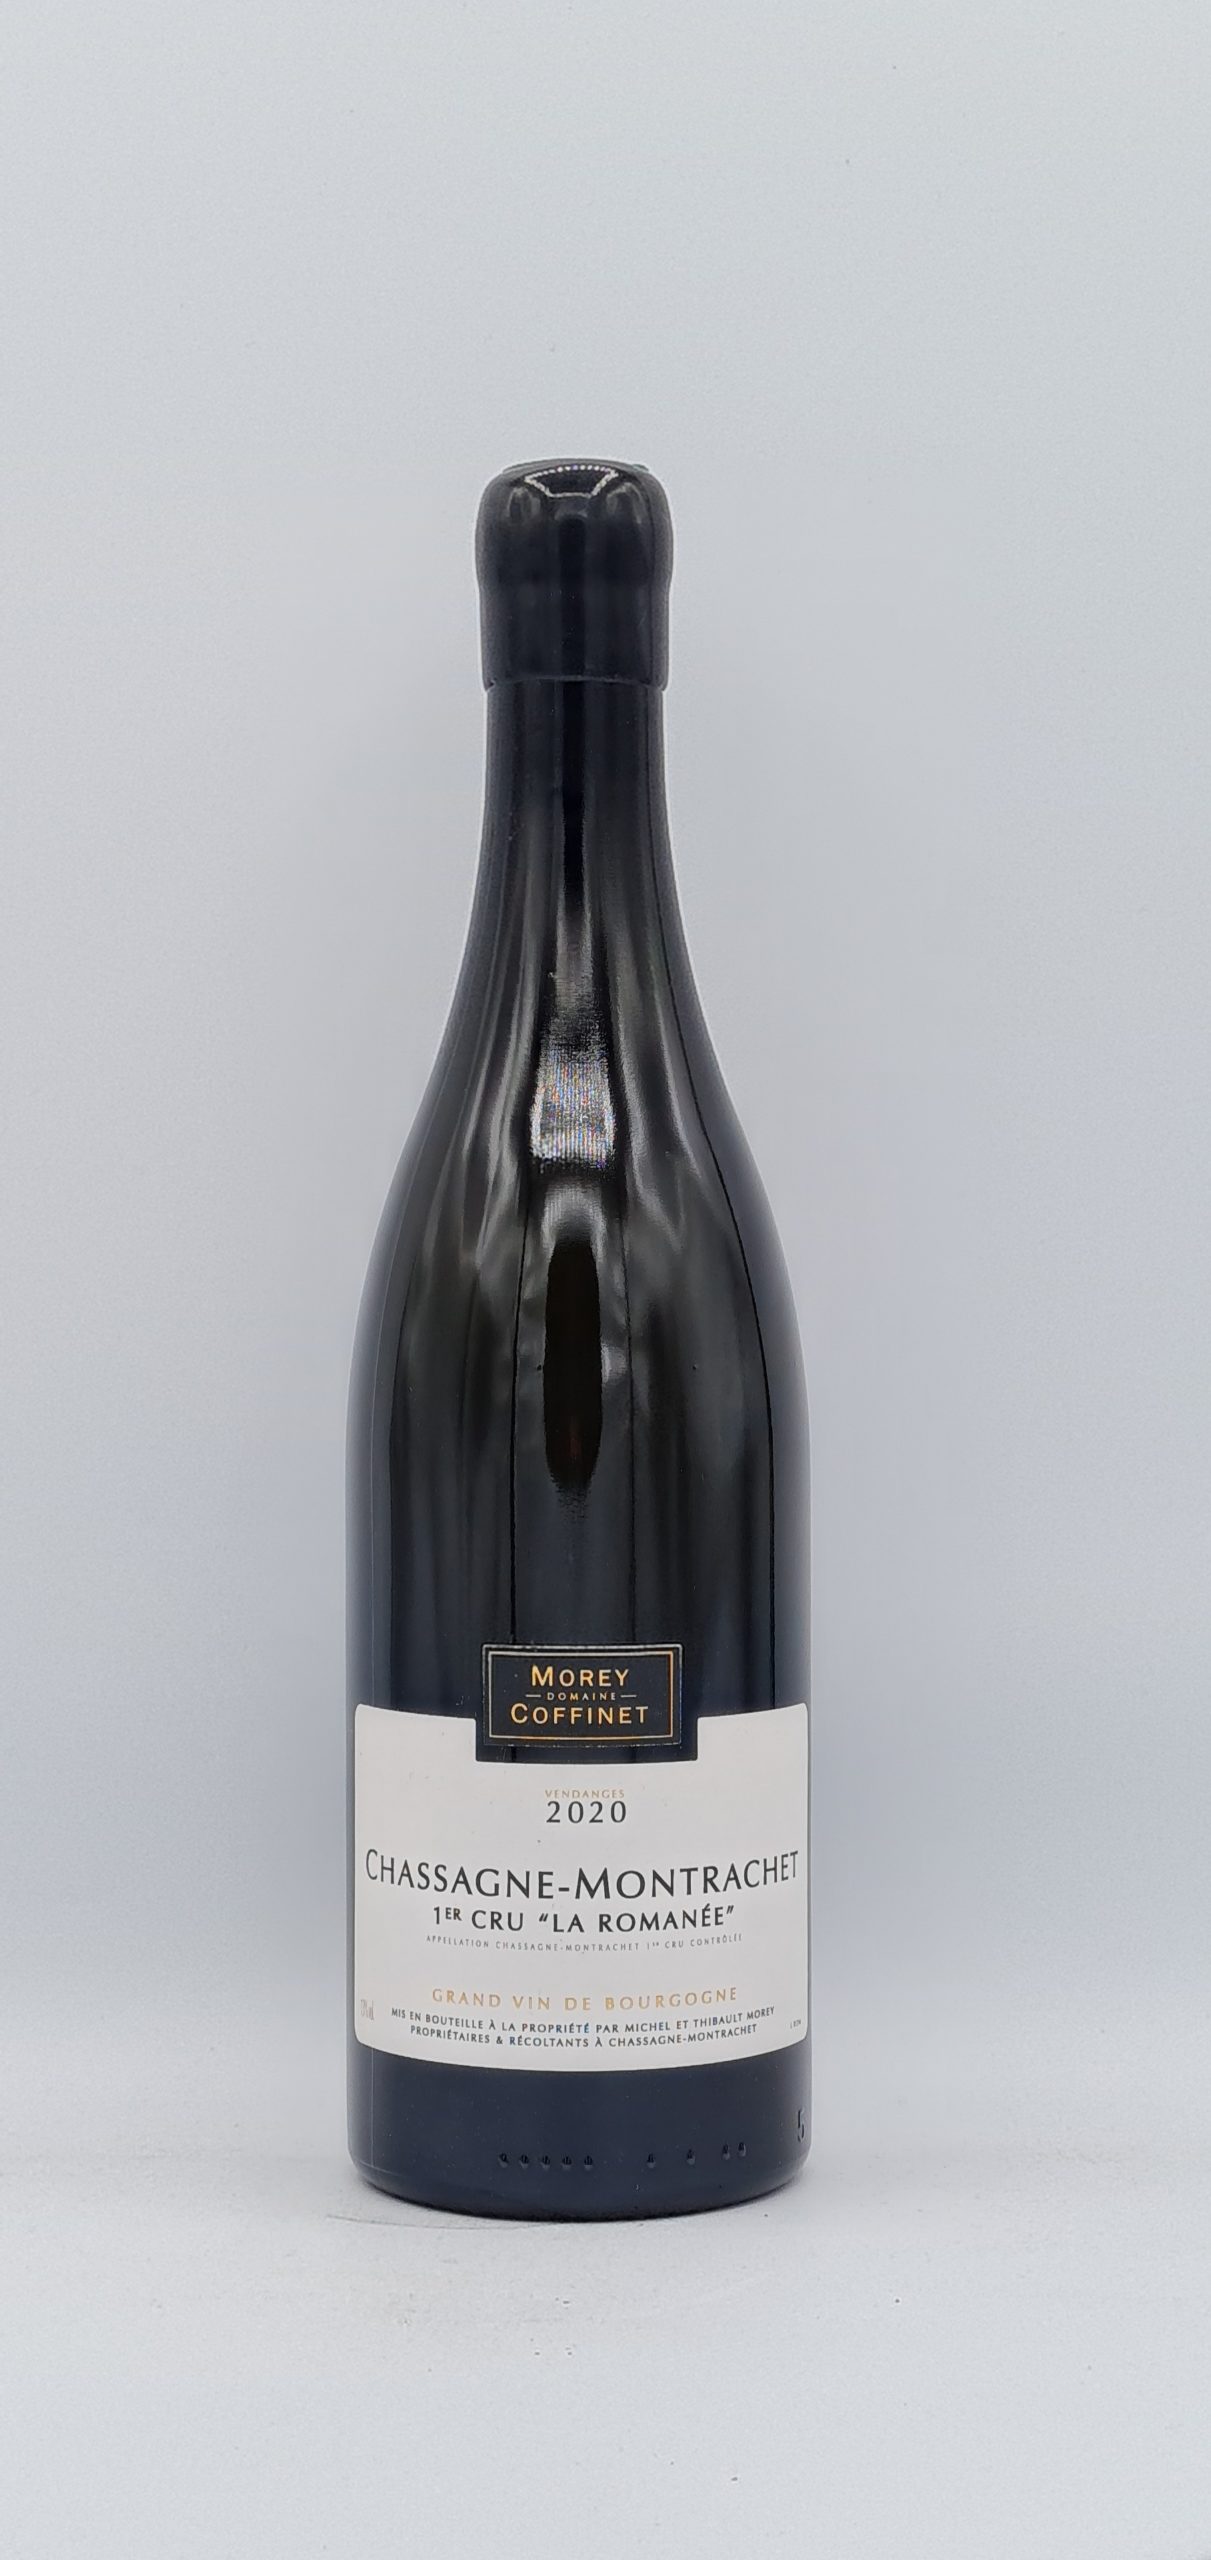 Bourgogne Chassagne-Montrachet 1er cru “La Romanée” 2020 Domaine Morey-Coffinet